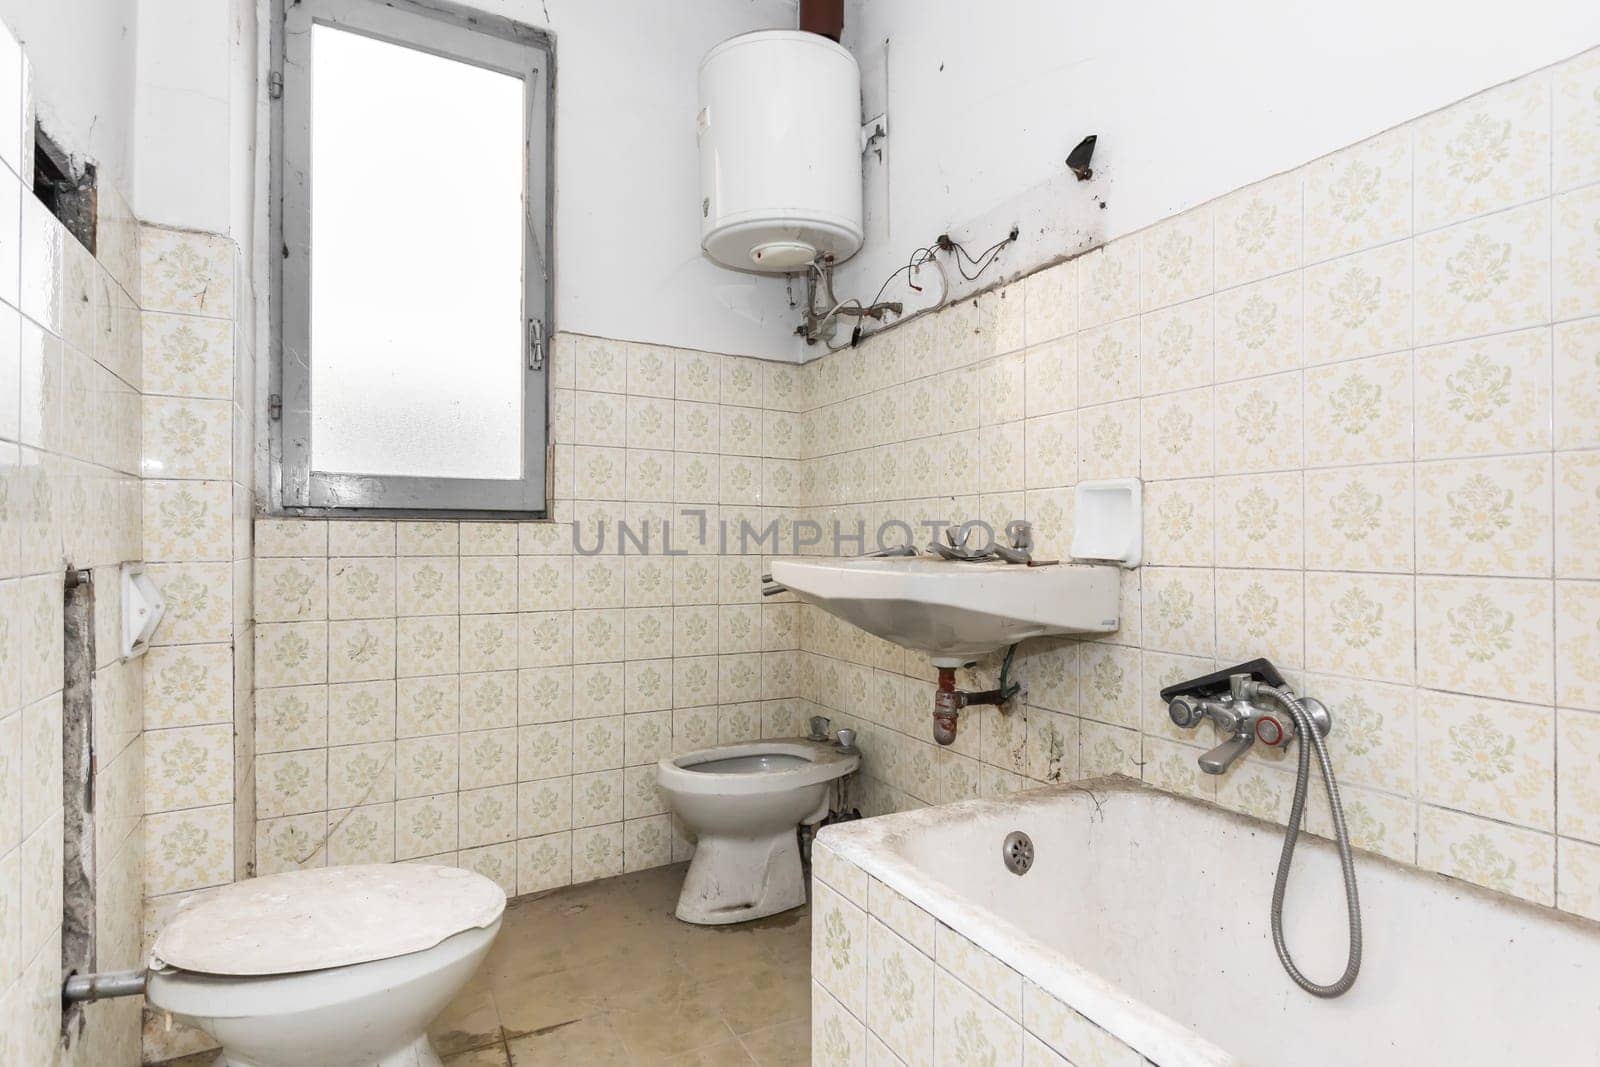 Dirty old bathroom by germanopoli